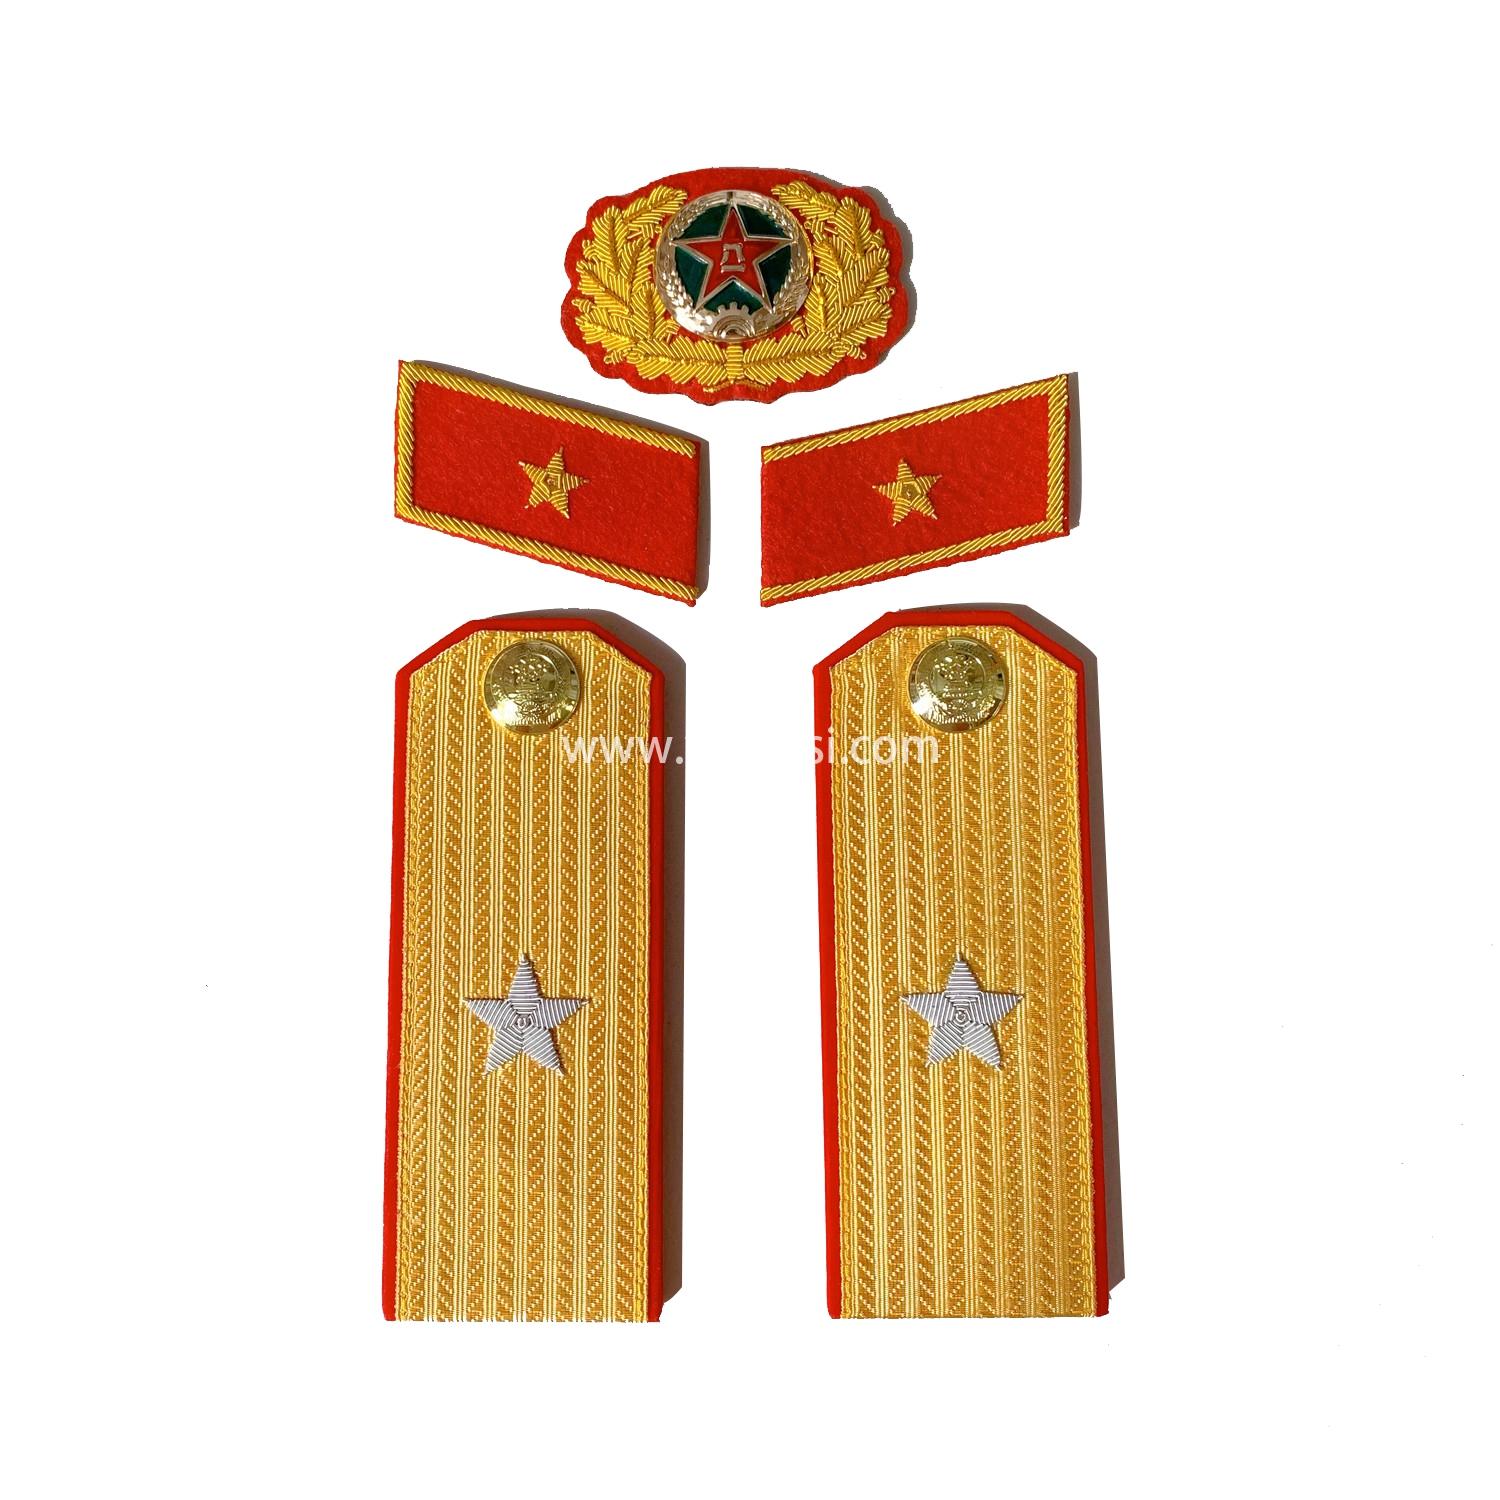 苏联大将肩章领章套装印度丝金销绣红边55式常服五星徽章松枝纪念章